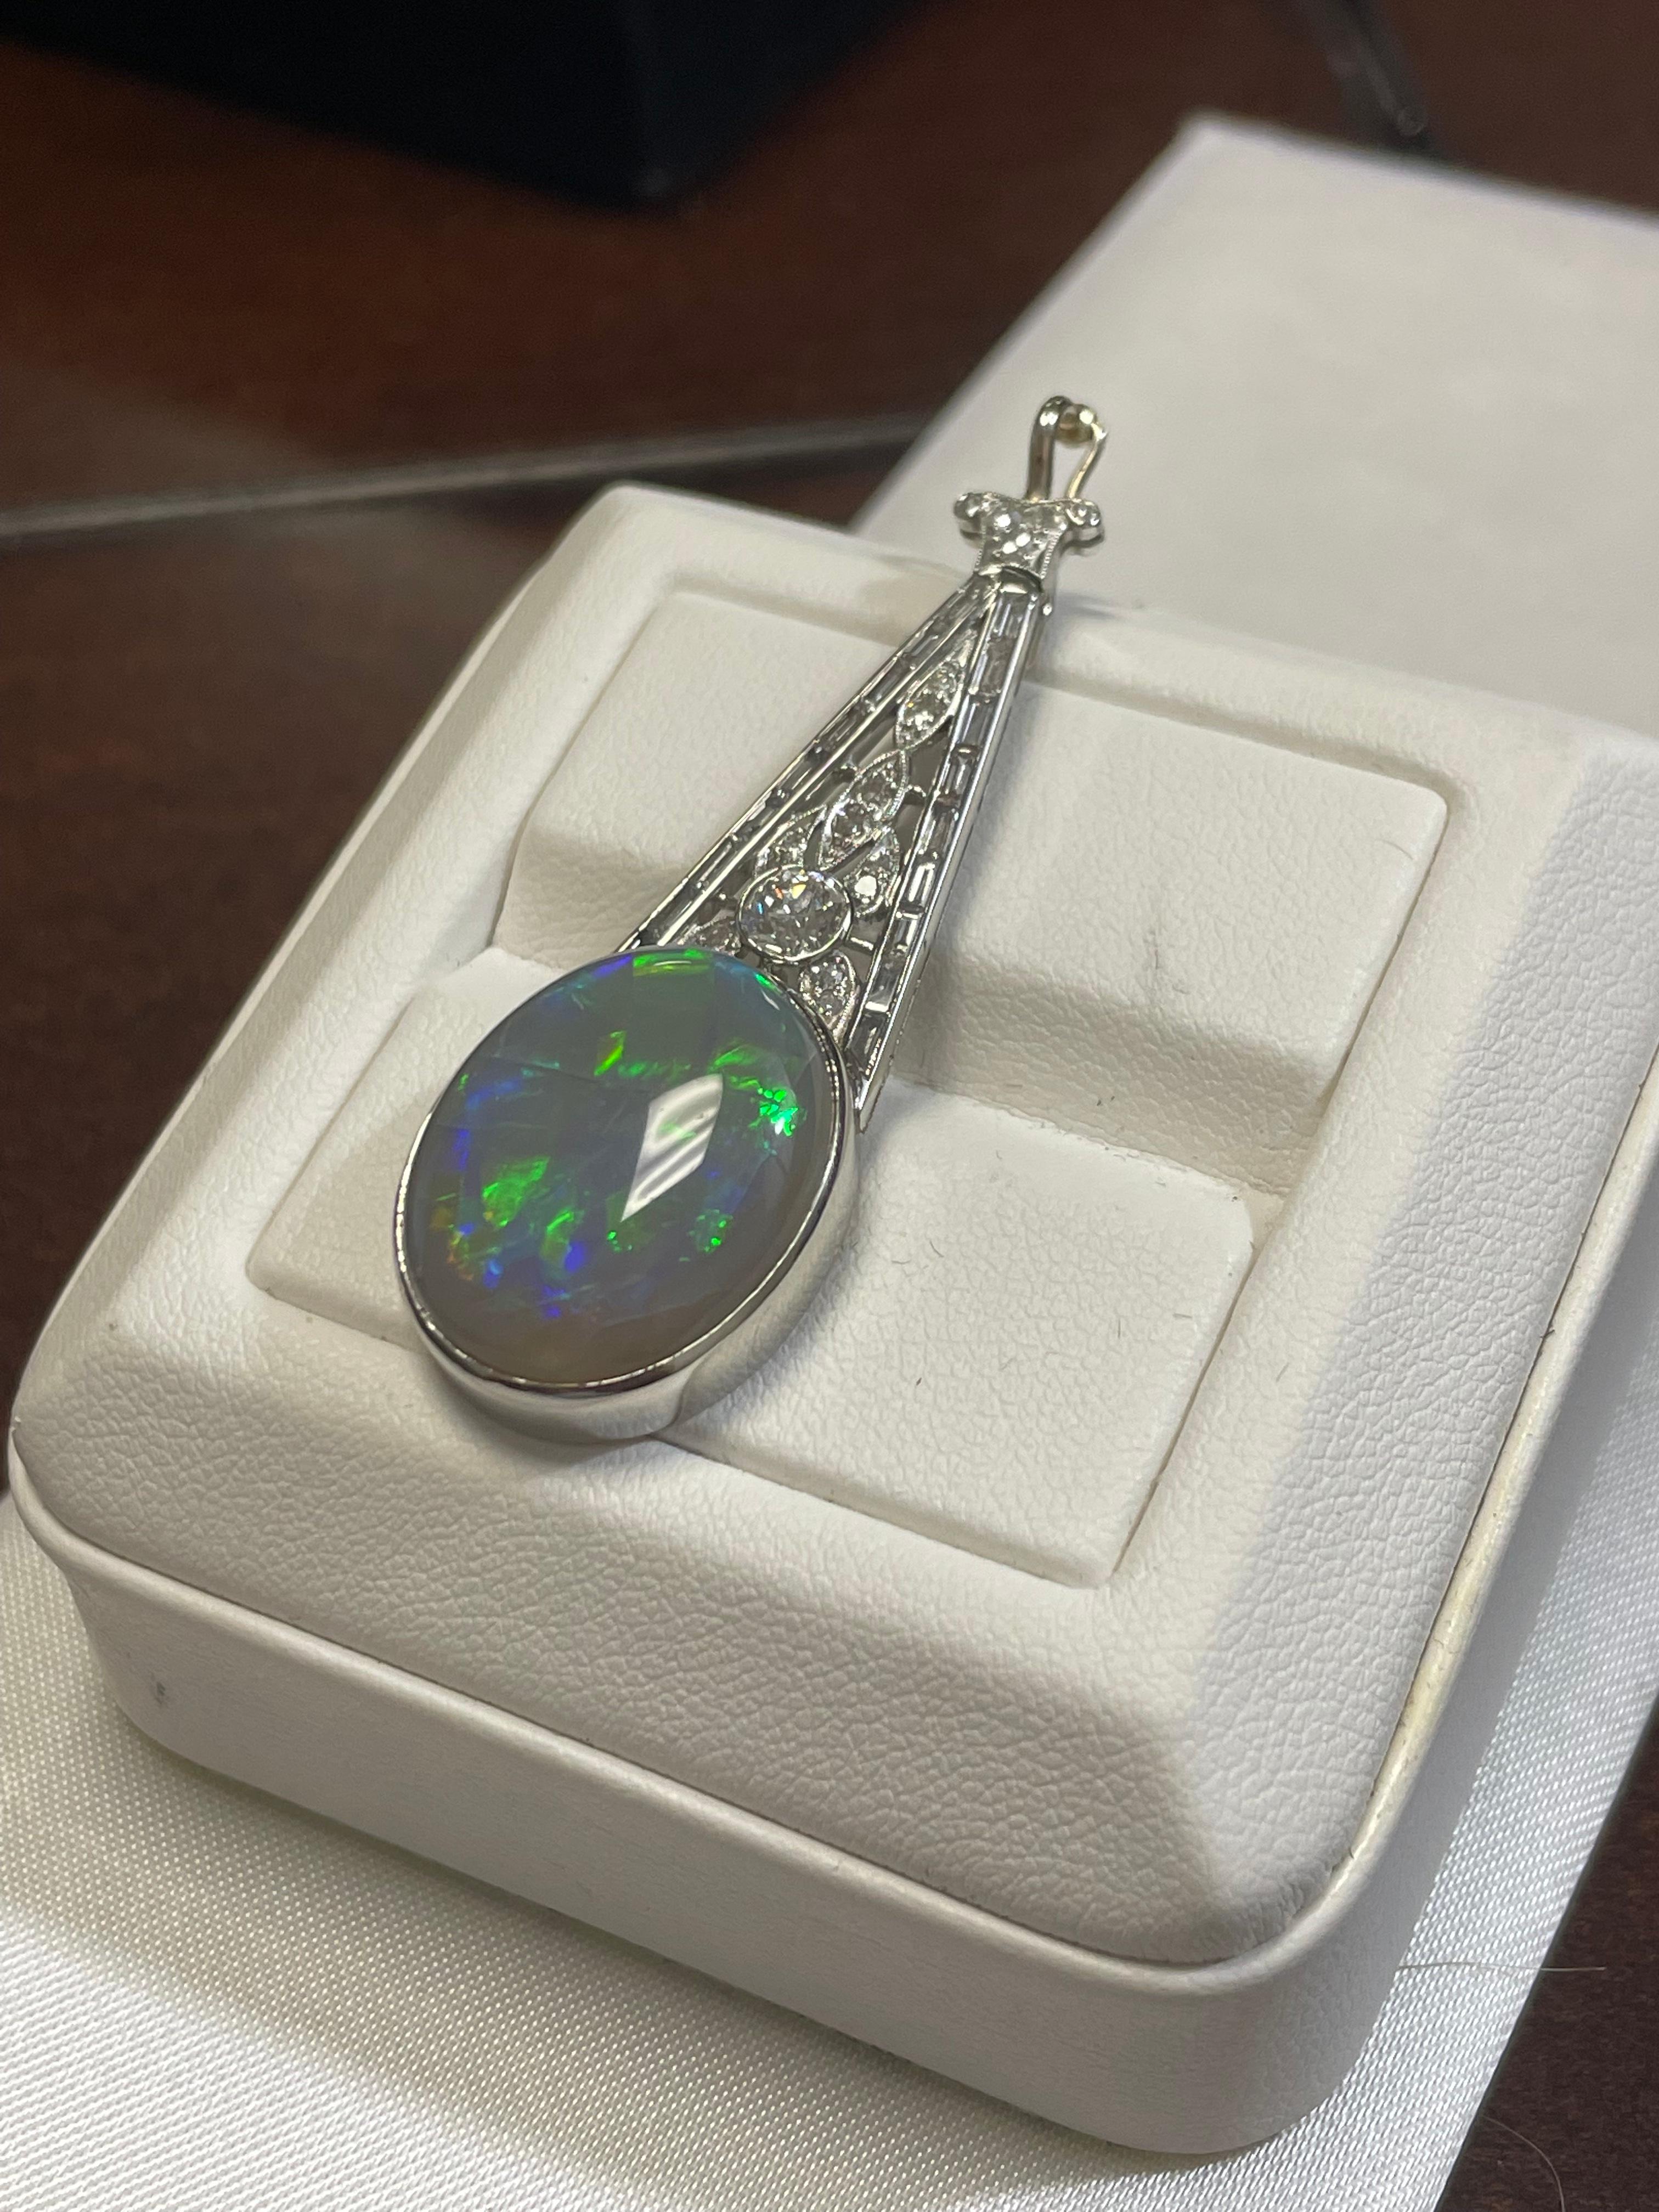 Grauer Opal einer Dame in blau-grüner Feuerfarbe.  Durchschnittliche Sättigungsskala mit Blitzlichtmuster.  Die Helligkeit des Feuers ist etwas hell mit Cabochon, ovale Form.  Der Zustand ist schlecht.  Die Abmessungen betragen 20 x 16,5 mm. 1